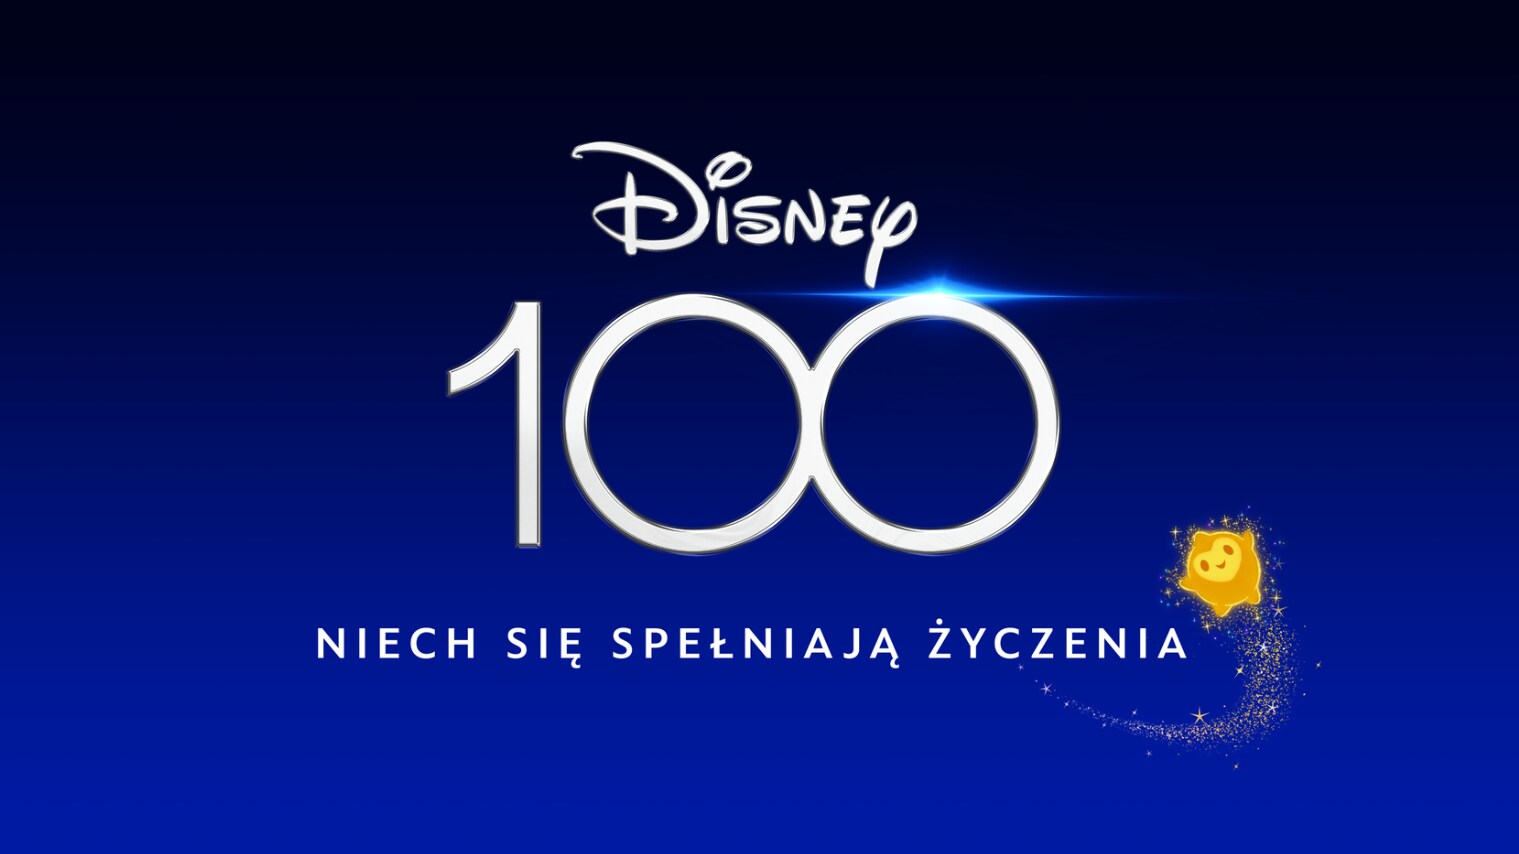 Disney kończy obchody 100 rocznicy świąteczną kampanią o wielkiej mocy życzeń 